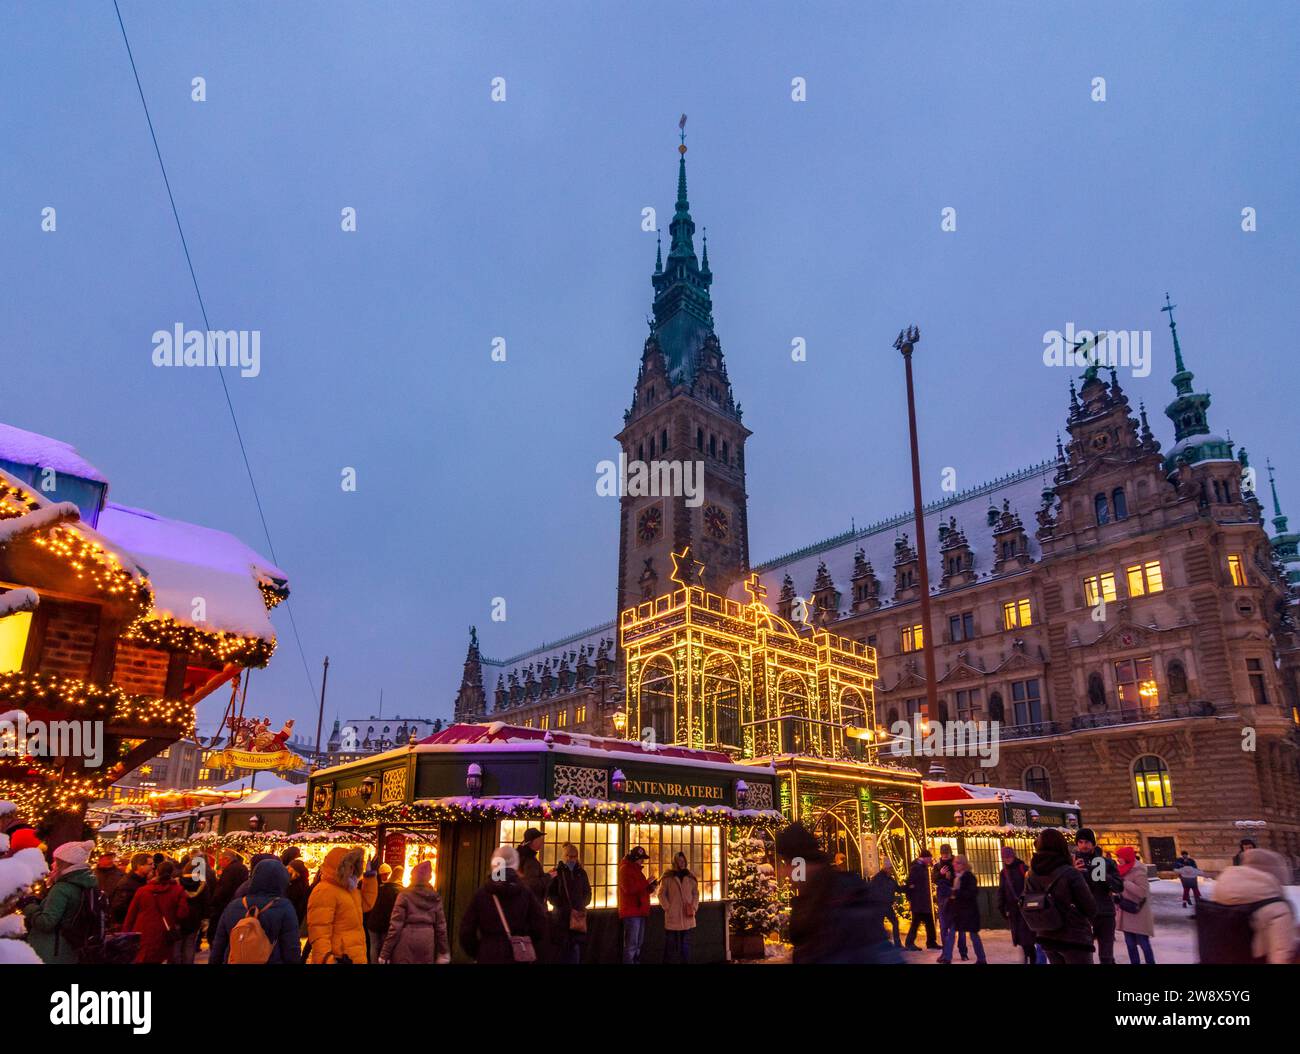 Hambourg : marché de Noël de Hambourg en face de la mairie, décoration de Noël, stands de vente, gens, chutes de neige en , Hambourg, Allemagne Banque D'Images